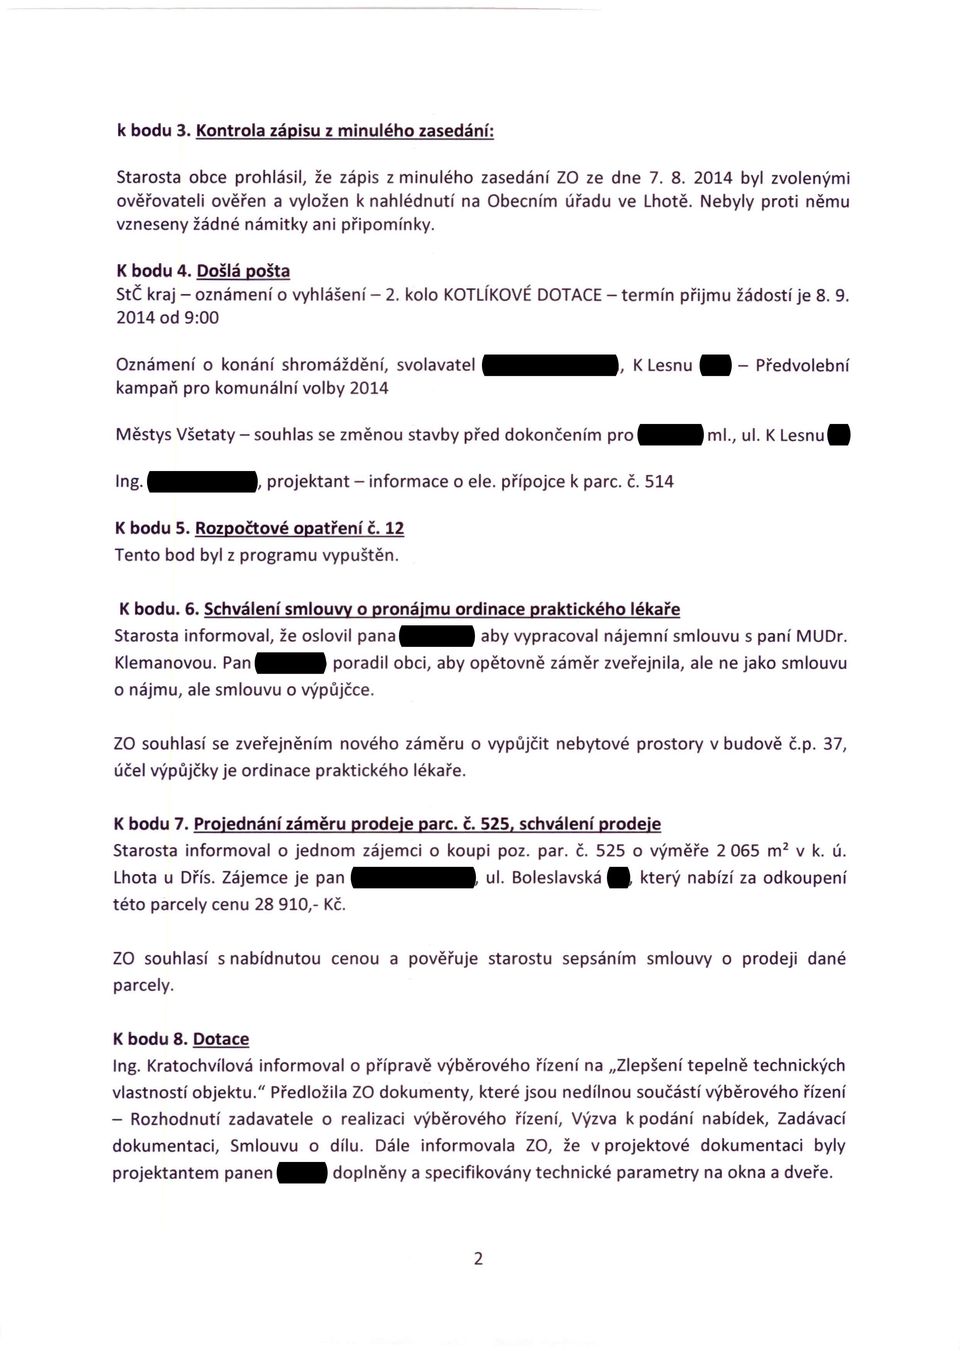 Došlá pošta StČ kraj - oznámení o vyhlášení - 2. kolo KOTLíKOVÉ DOTACE- termín přijmu žádostí je 8.9.